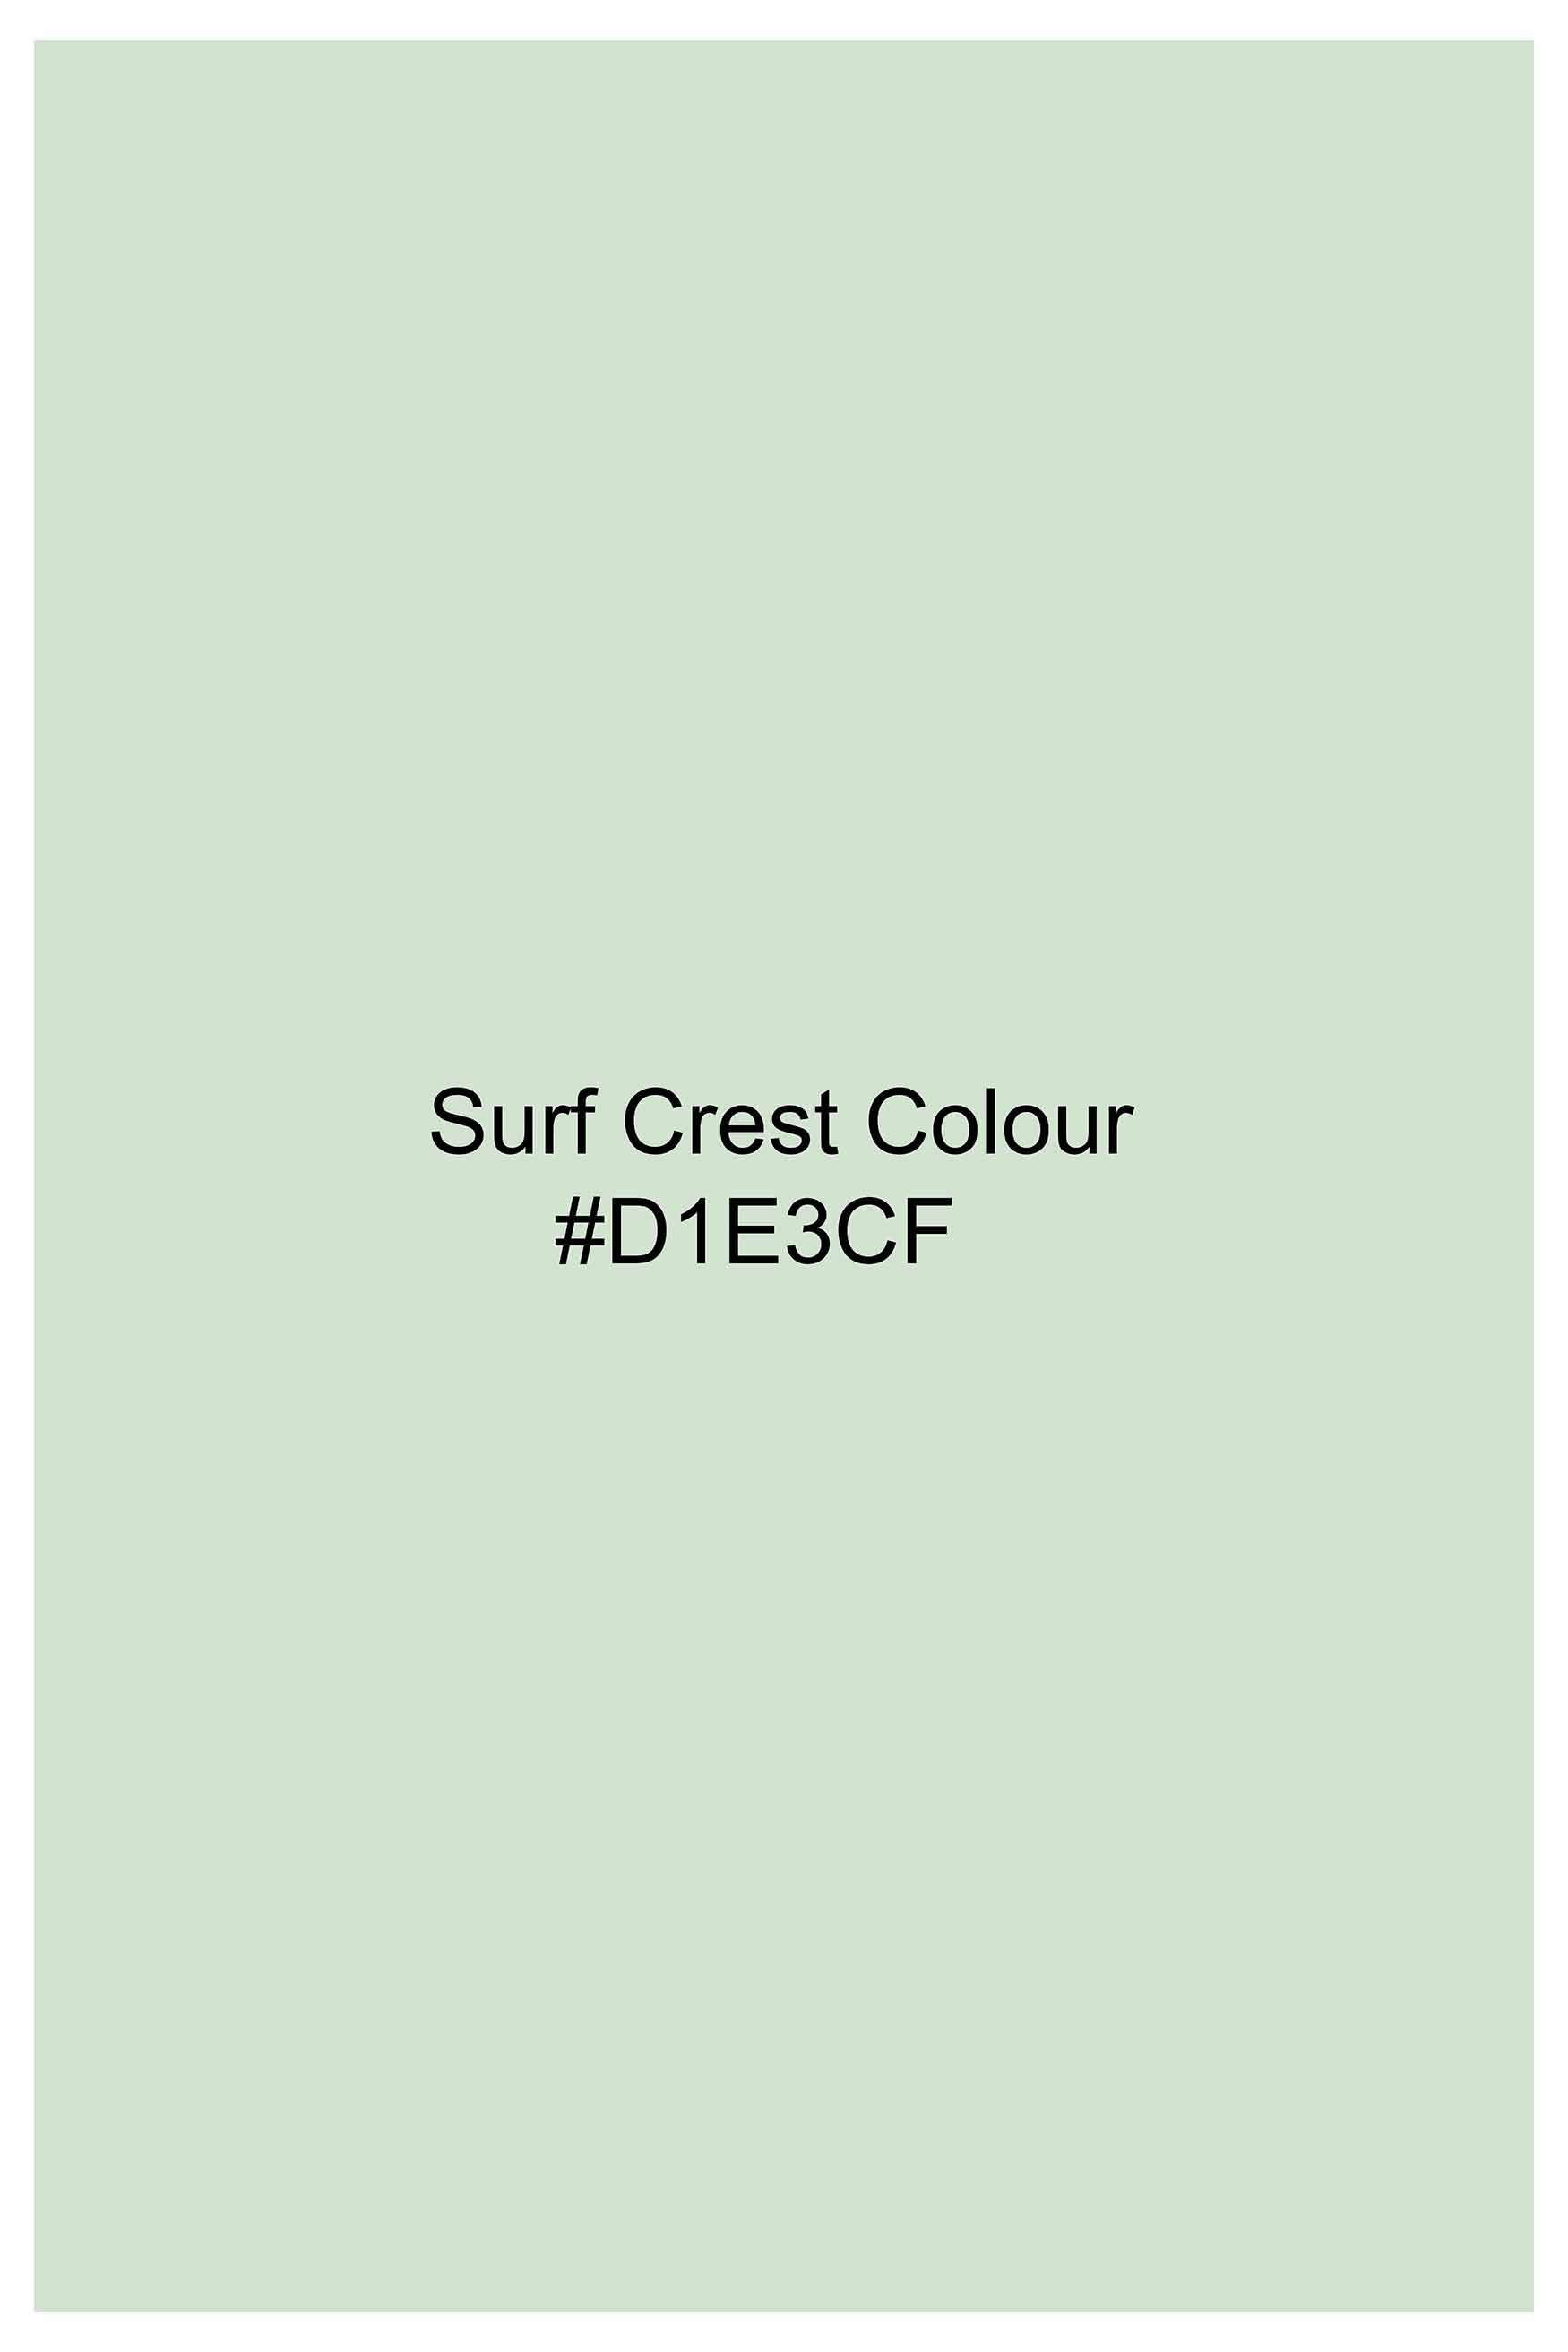 Surf Crest Green With Dinosaur Patchwork Royal Oxford Designer Shirt 6337-CA-E332-38, 6337-CA-E332-H-38, 6337-CA-E332-39, 6337-CA-E332-H-39, 6337-CA-E332-40, 6337-CA-E332-H-40, 6337-CA-E332-42, 6337-CA-E332-H-42, 6337-CA-E332-44, 6337-CA-E332-H-44, 6337-CA-E332-46, 6337-CA-E332-H-46, 6337-CA-E332-48, 6337-CA-E332-H-48, 6337-CA-E332-50, 6337-CA-E332-H-50, 6337-CA-E332-52, 6337-CA-E332-H-52